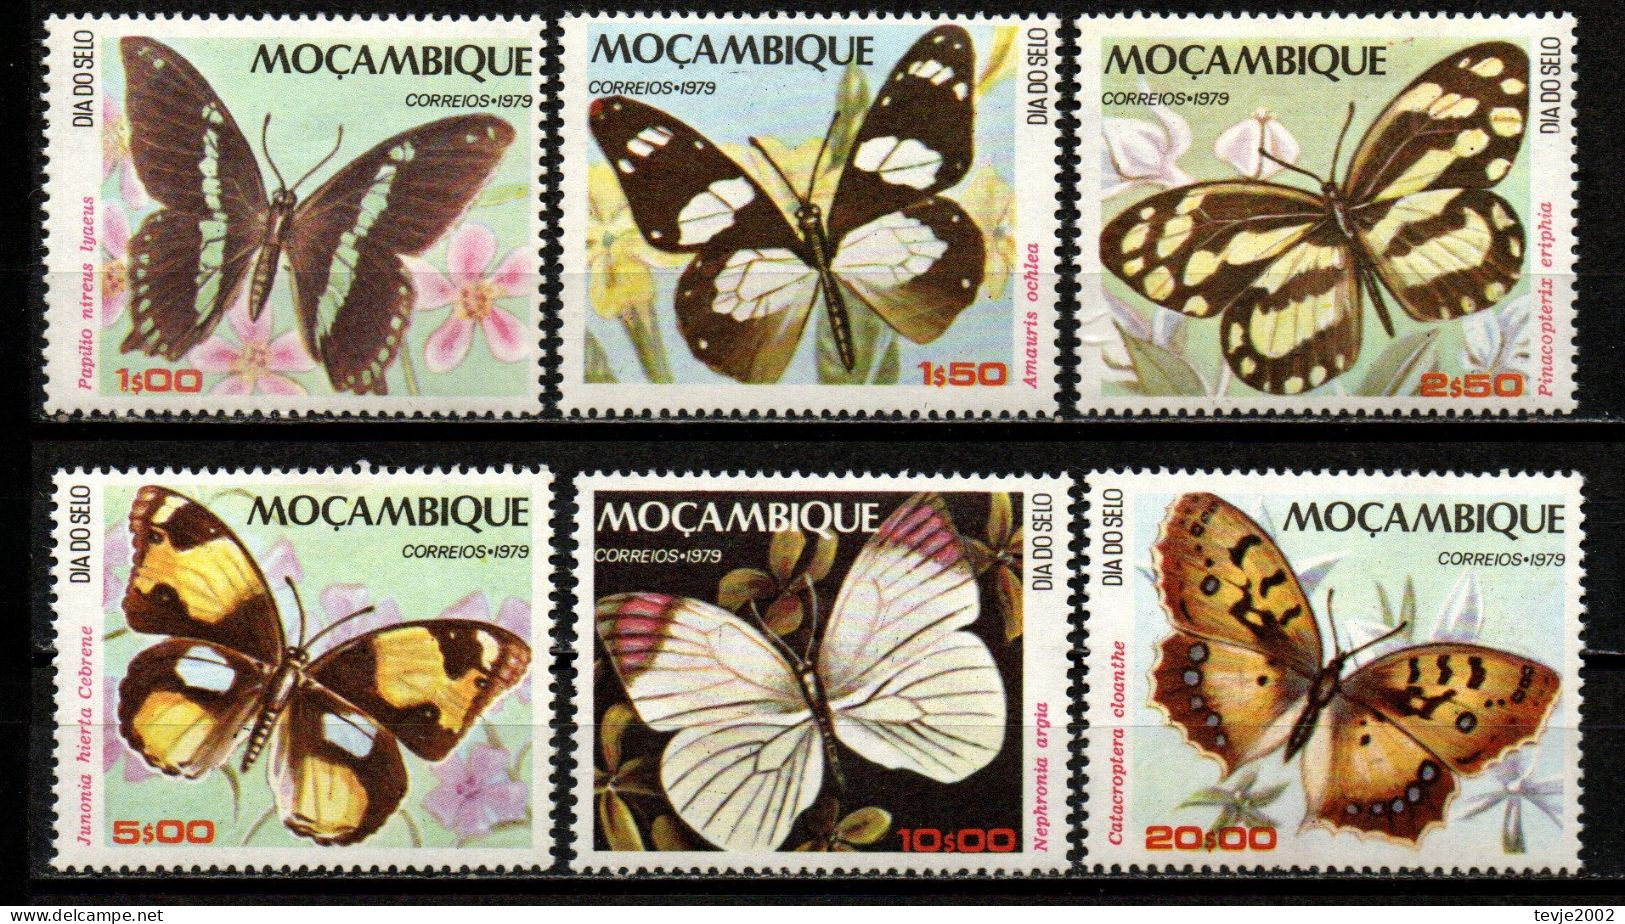 Moçambique 1979 - Mi.Nr. 731 - 736 - Postfrisch MNH - Tiere Animals Schmetterlinge Butterflies - Mariposas